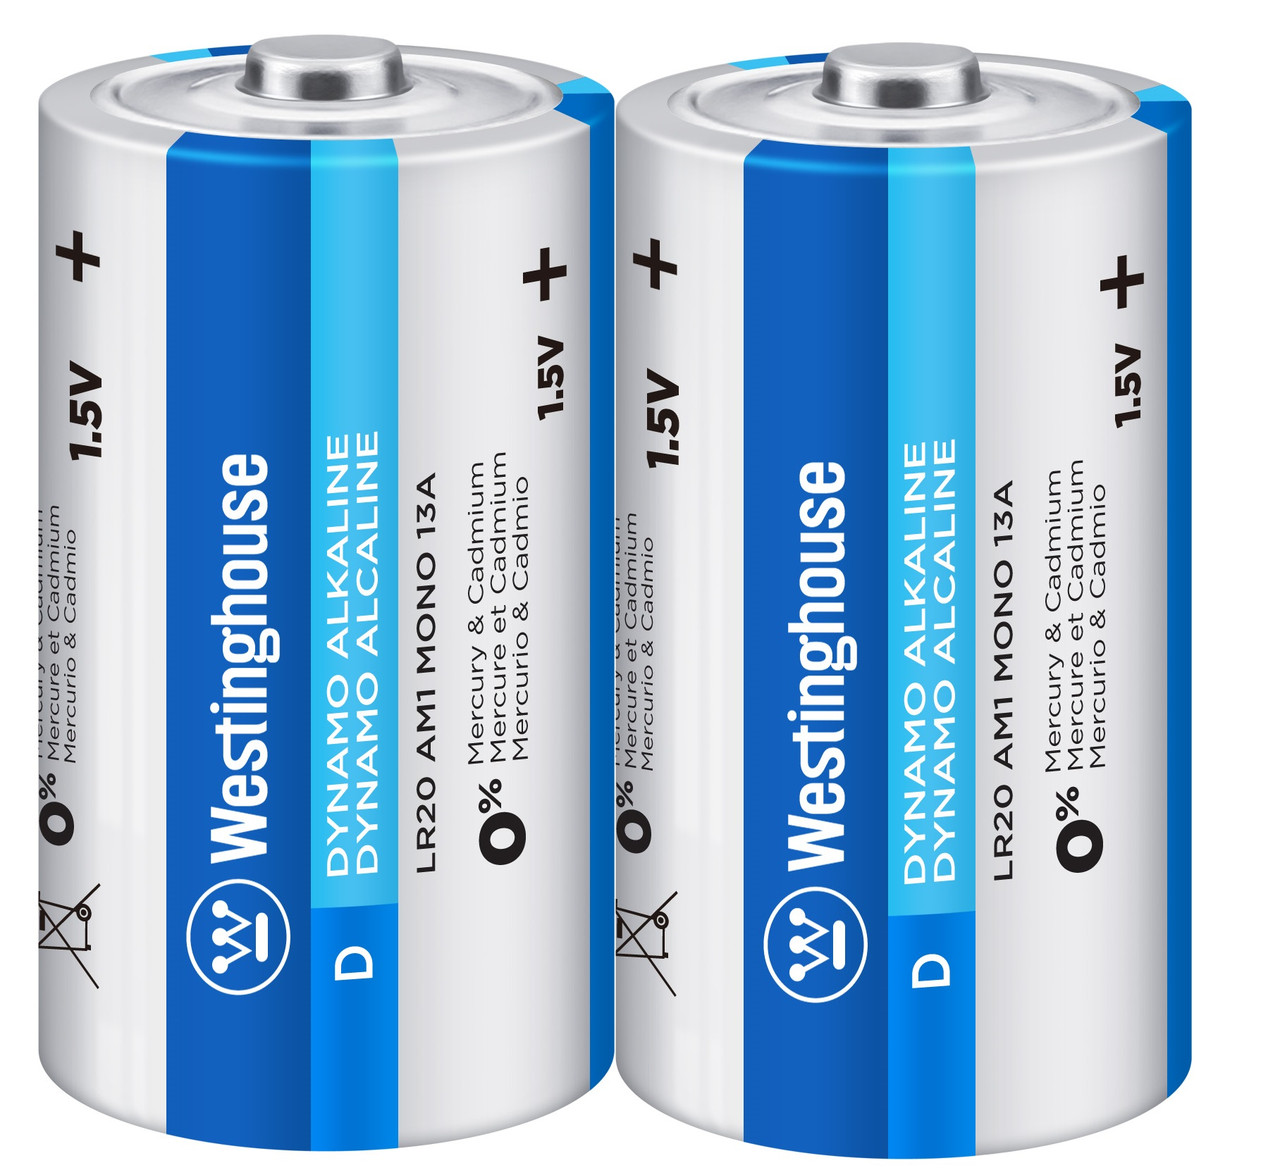 Лужна батарейка Westinghouse Dynamo Alkaline D/LR20 2шт/уп shrink, фото 1